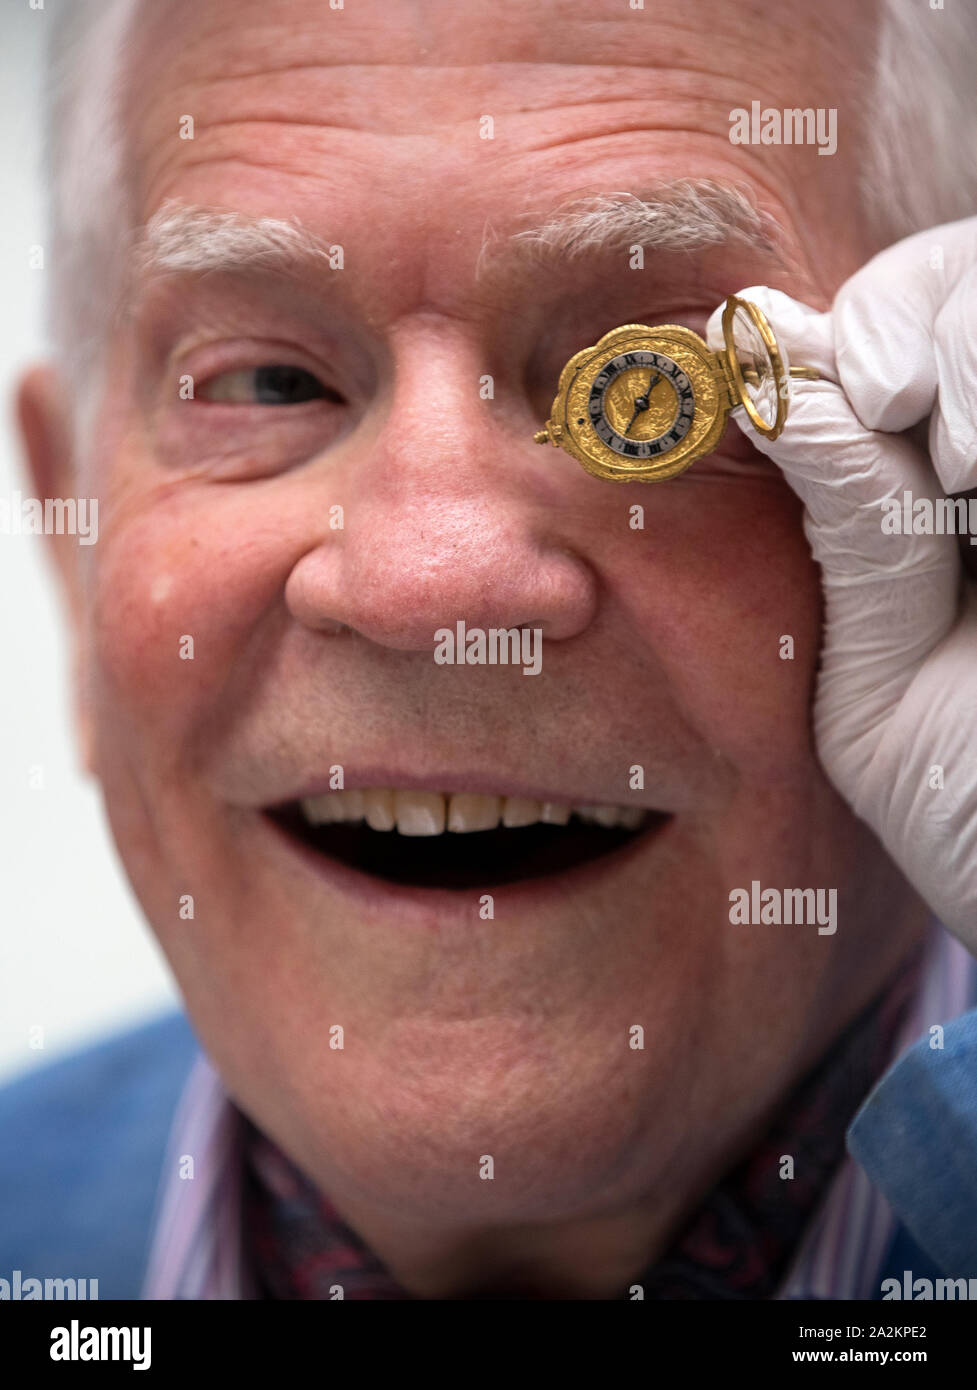 Le Dr John C Taylor OBE avec son Edward East Rock crystal watch (c1635-40) qui sera exposé dans le cadre de 'le luxe du temps : Horloges de 1550-1750" Exposition au Musée National d'Écosse, Édimbourg, du 4 octobre 2019. Banque D'Images